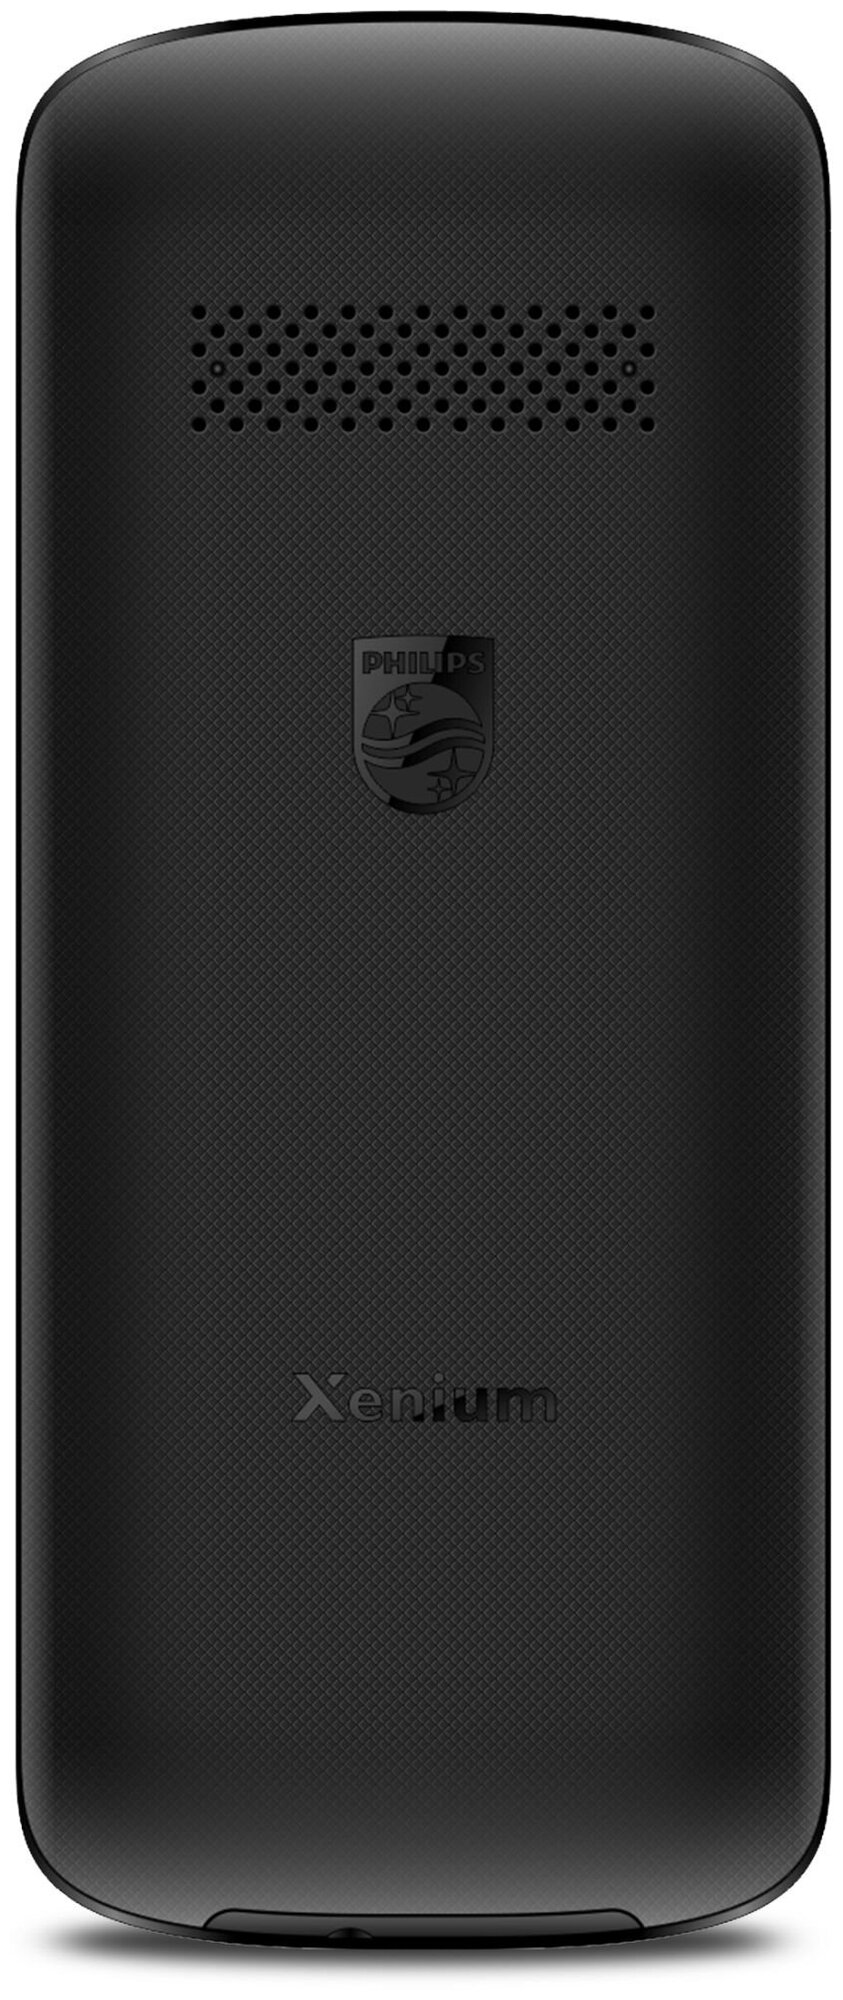 Сотовый телефон PHILIPS E2101 Xenium black - черный